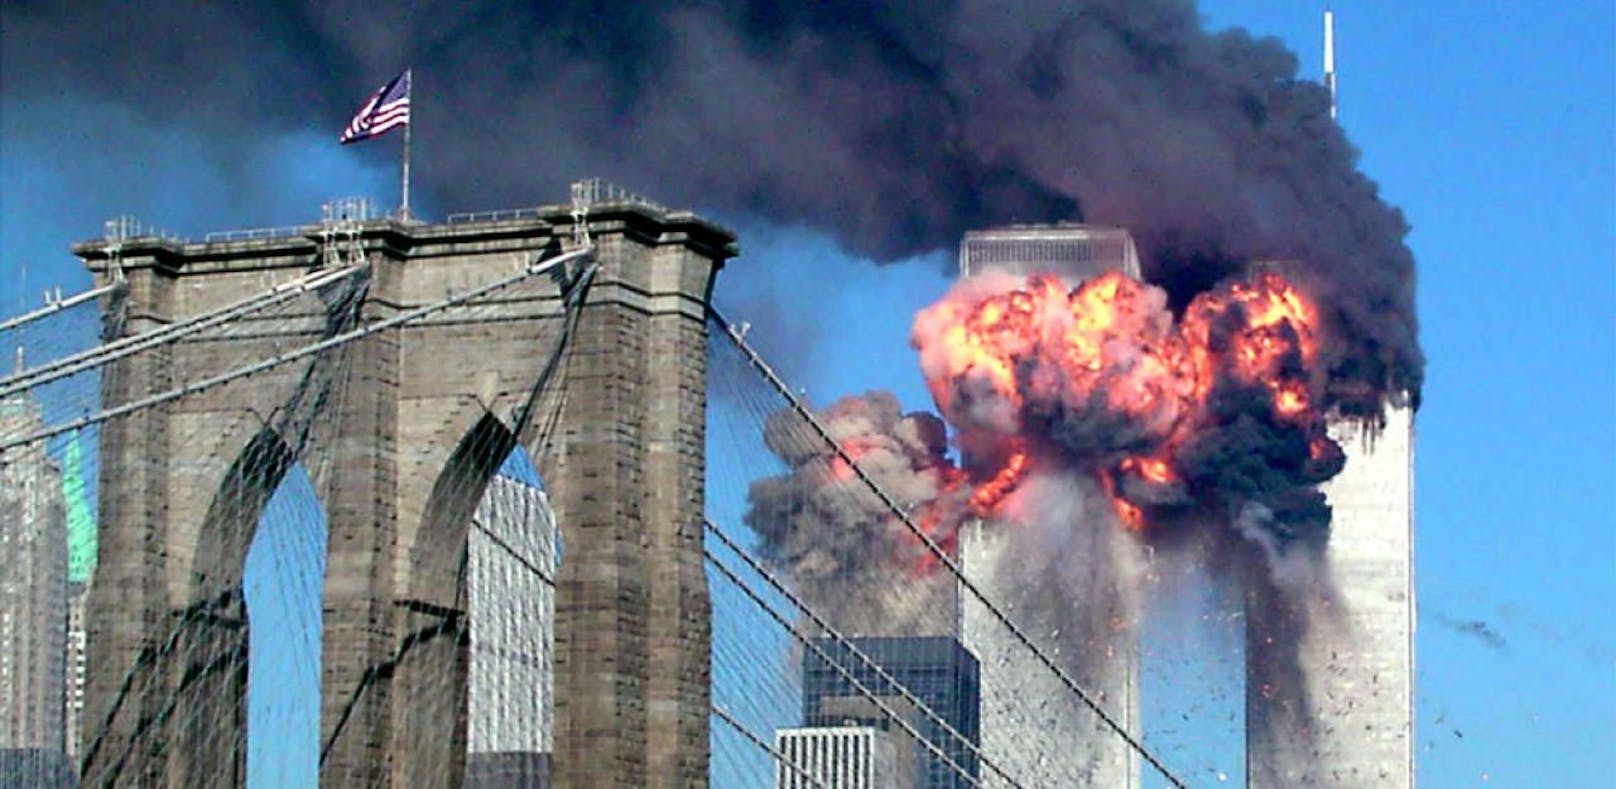 10 Songs, die von 9/11 inspiriert worden sind